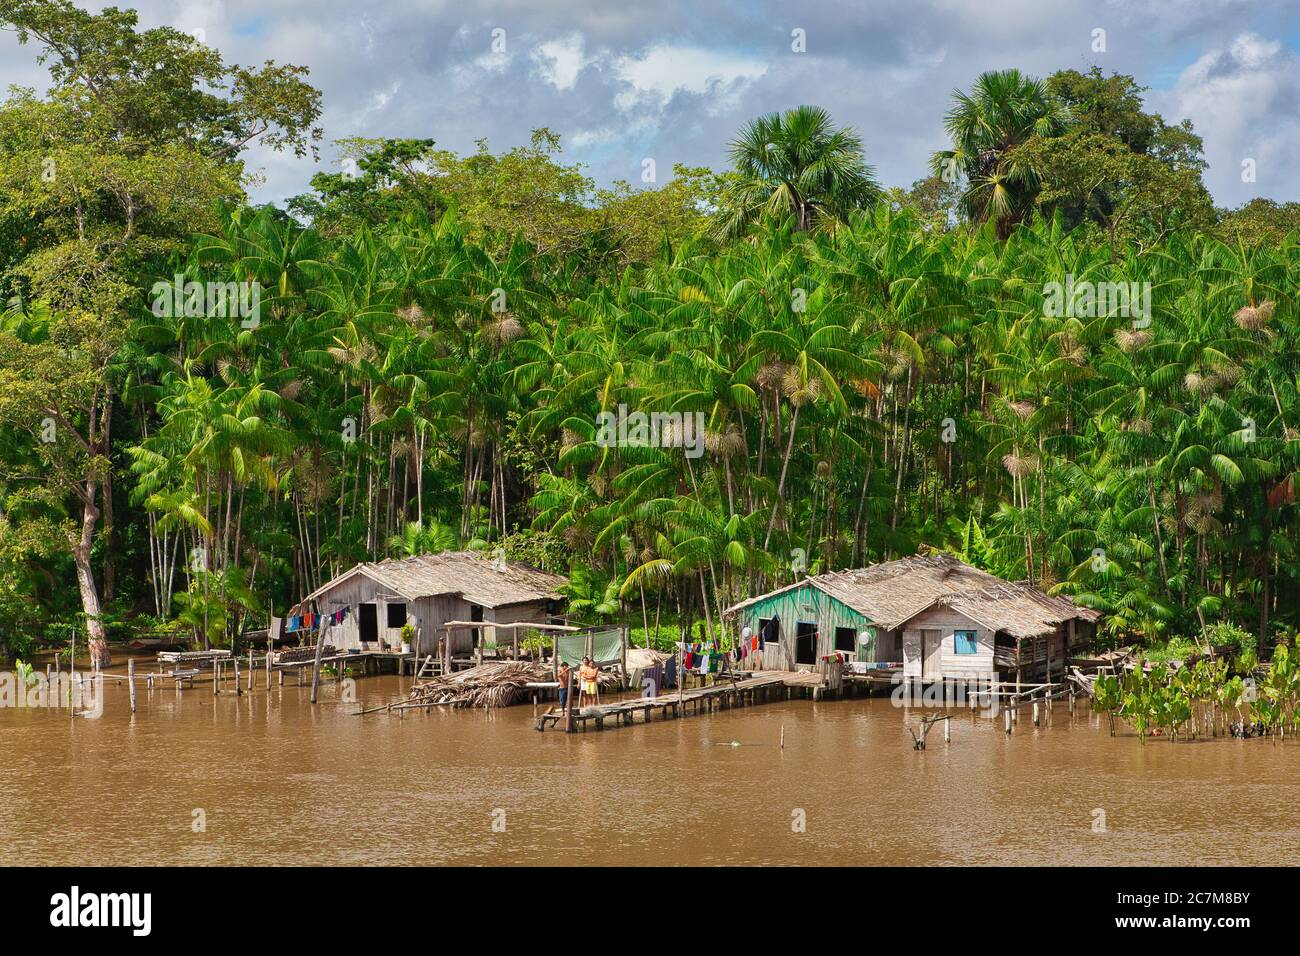 La rivière Amazone et des maisons sur pilotis sur la rive de la rivière, une façon traditionnelle brésilienne de vivre près de la rivière. Près de Belem, État de Para, Brésil Banque D'Images